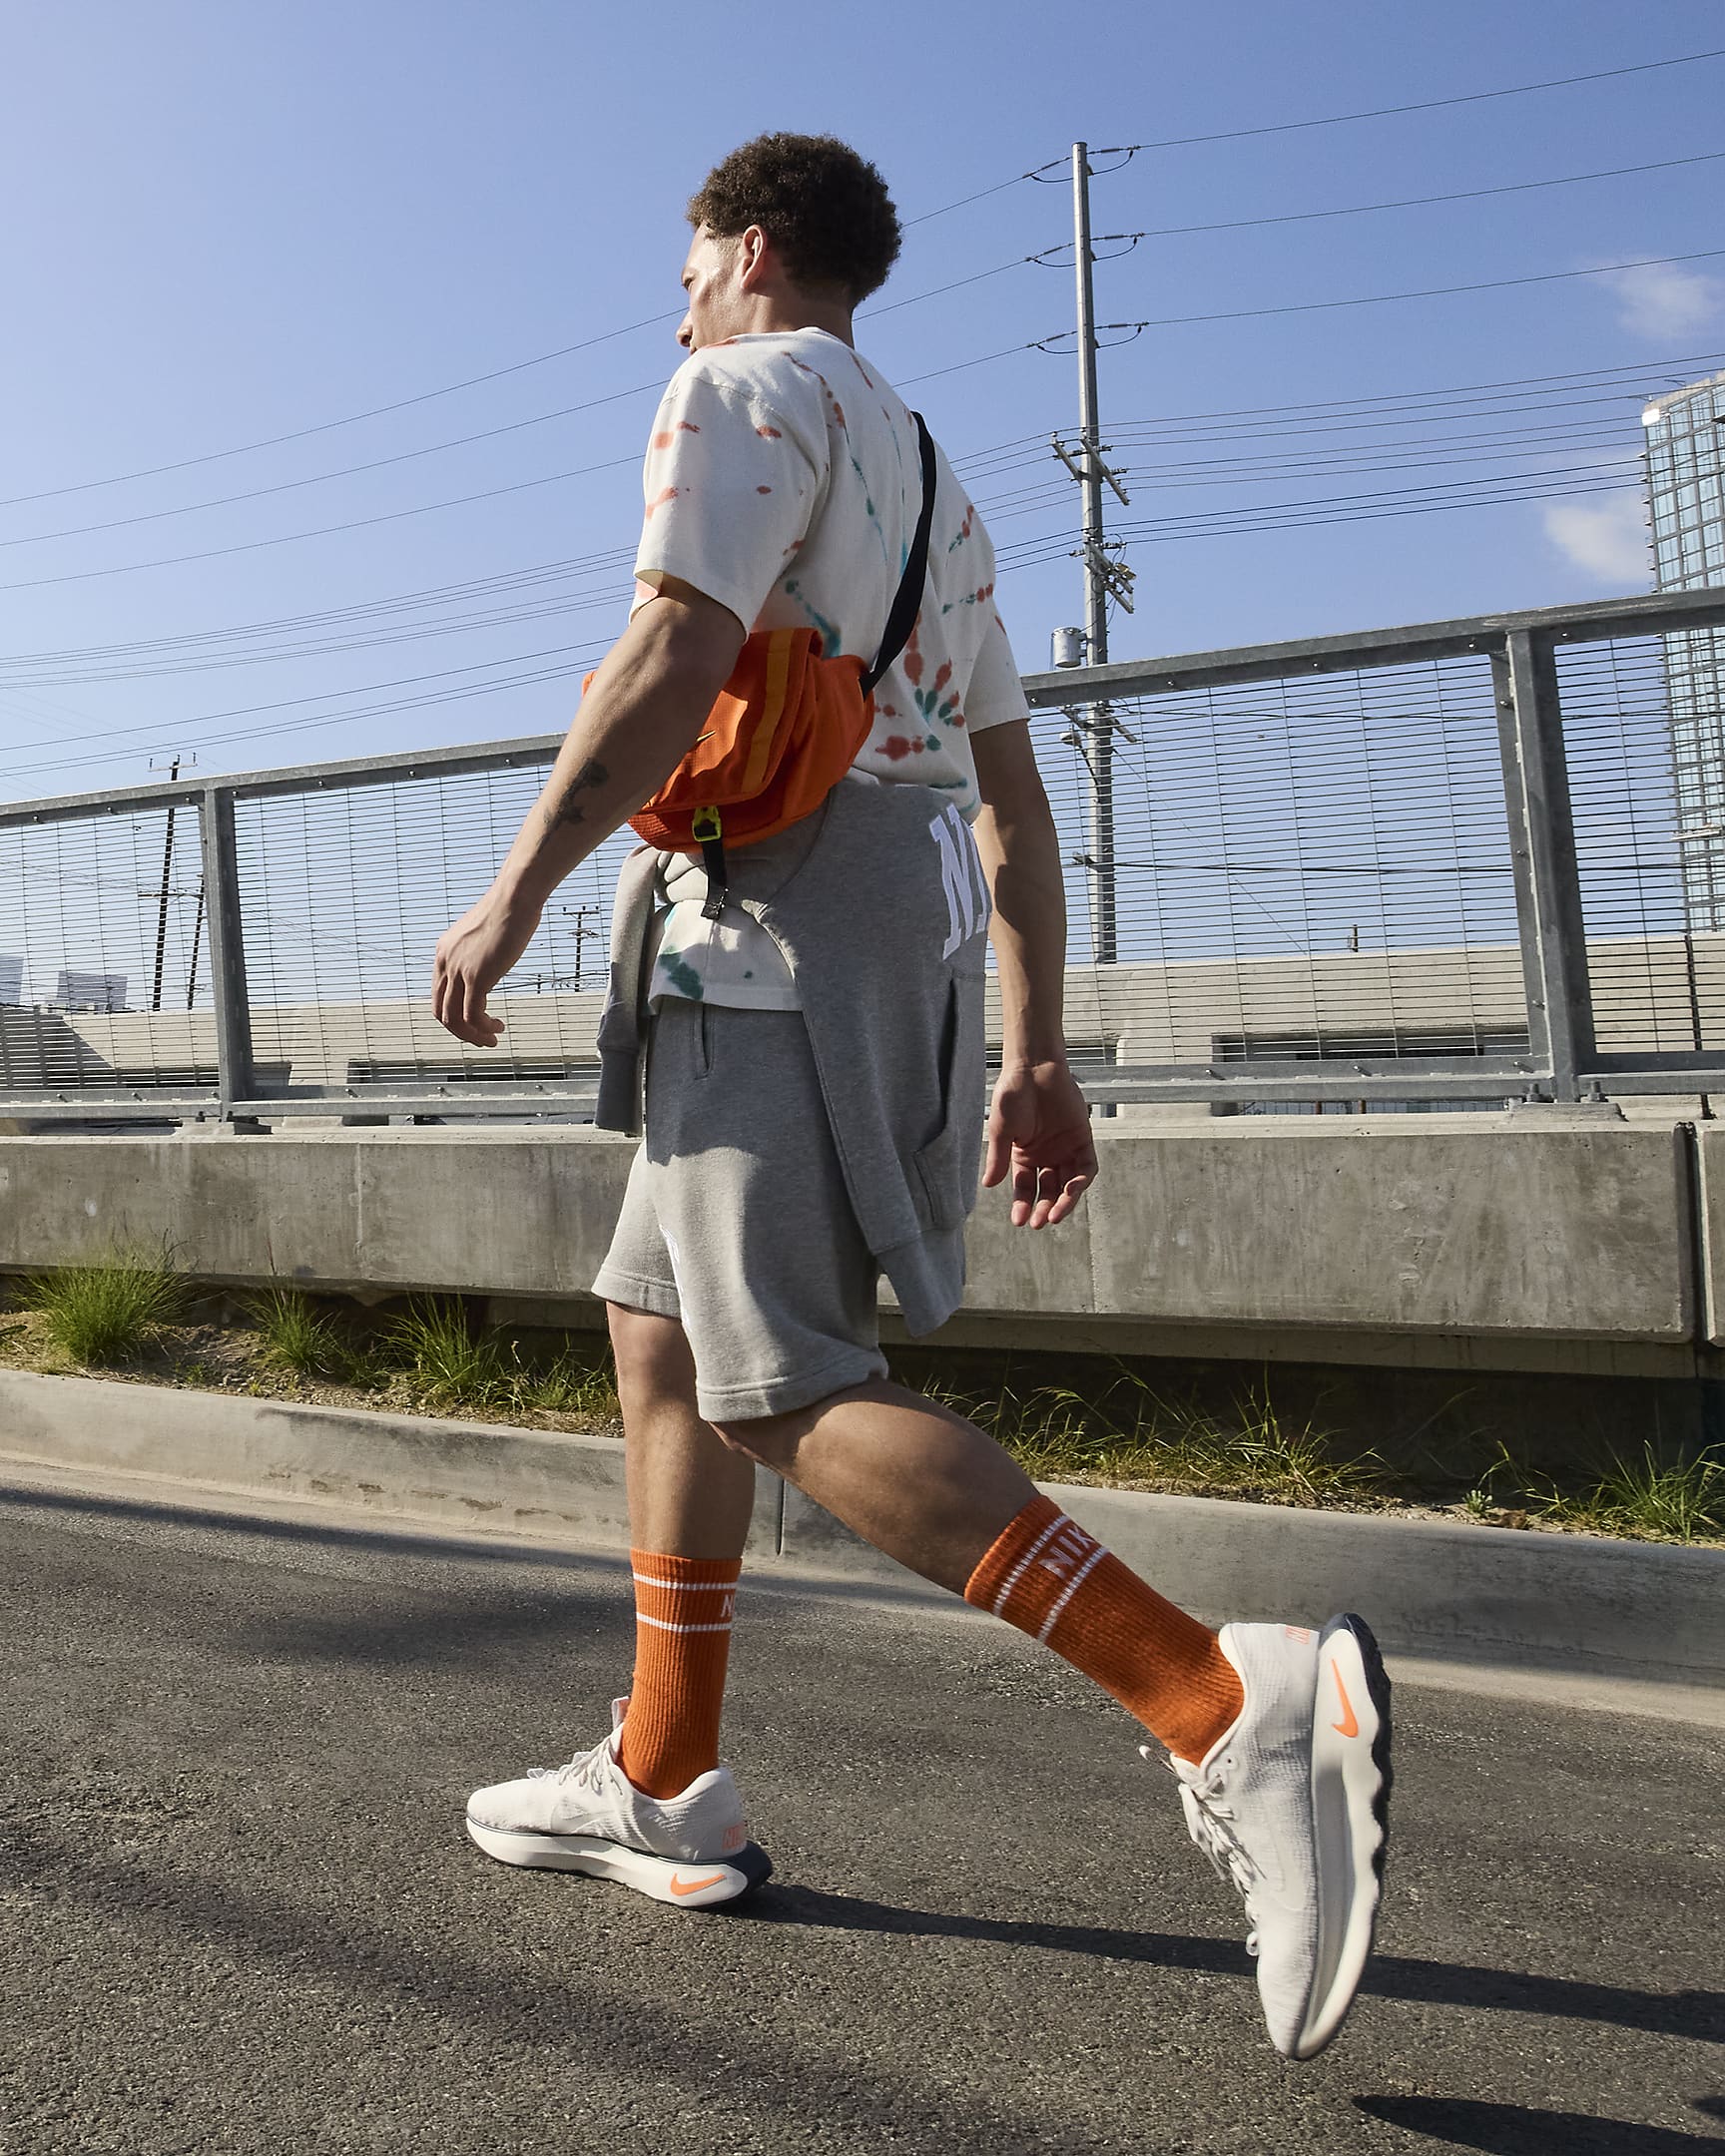 Nike Motiva Men's Walking Shoes - Sail/Platinum Tint/Light Iron Ore/Sail